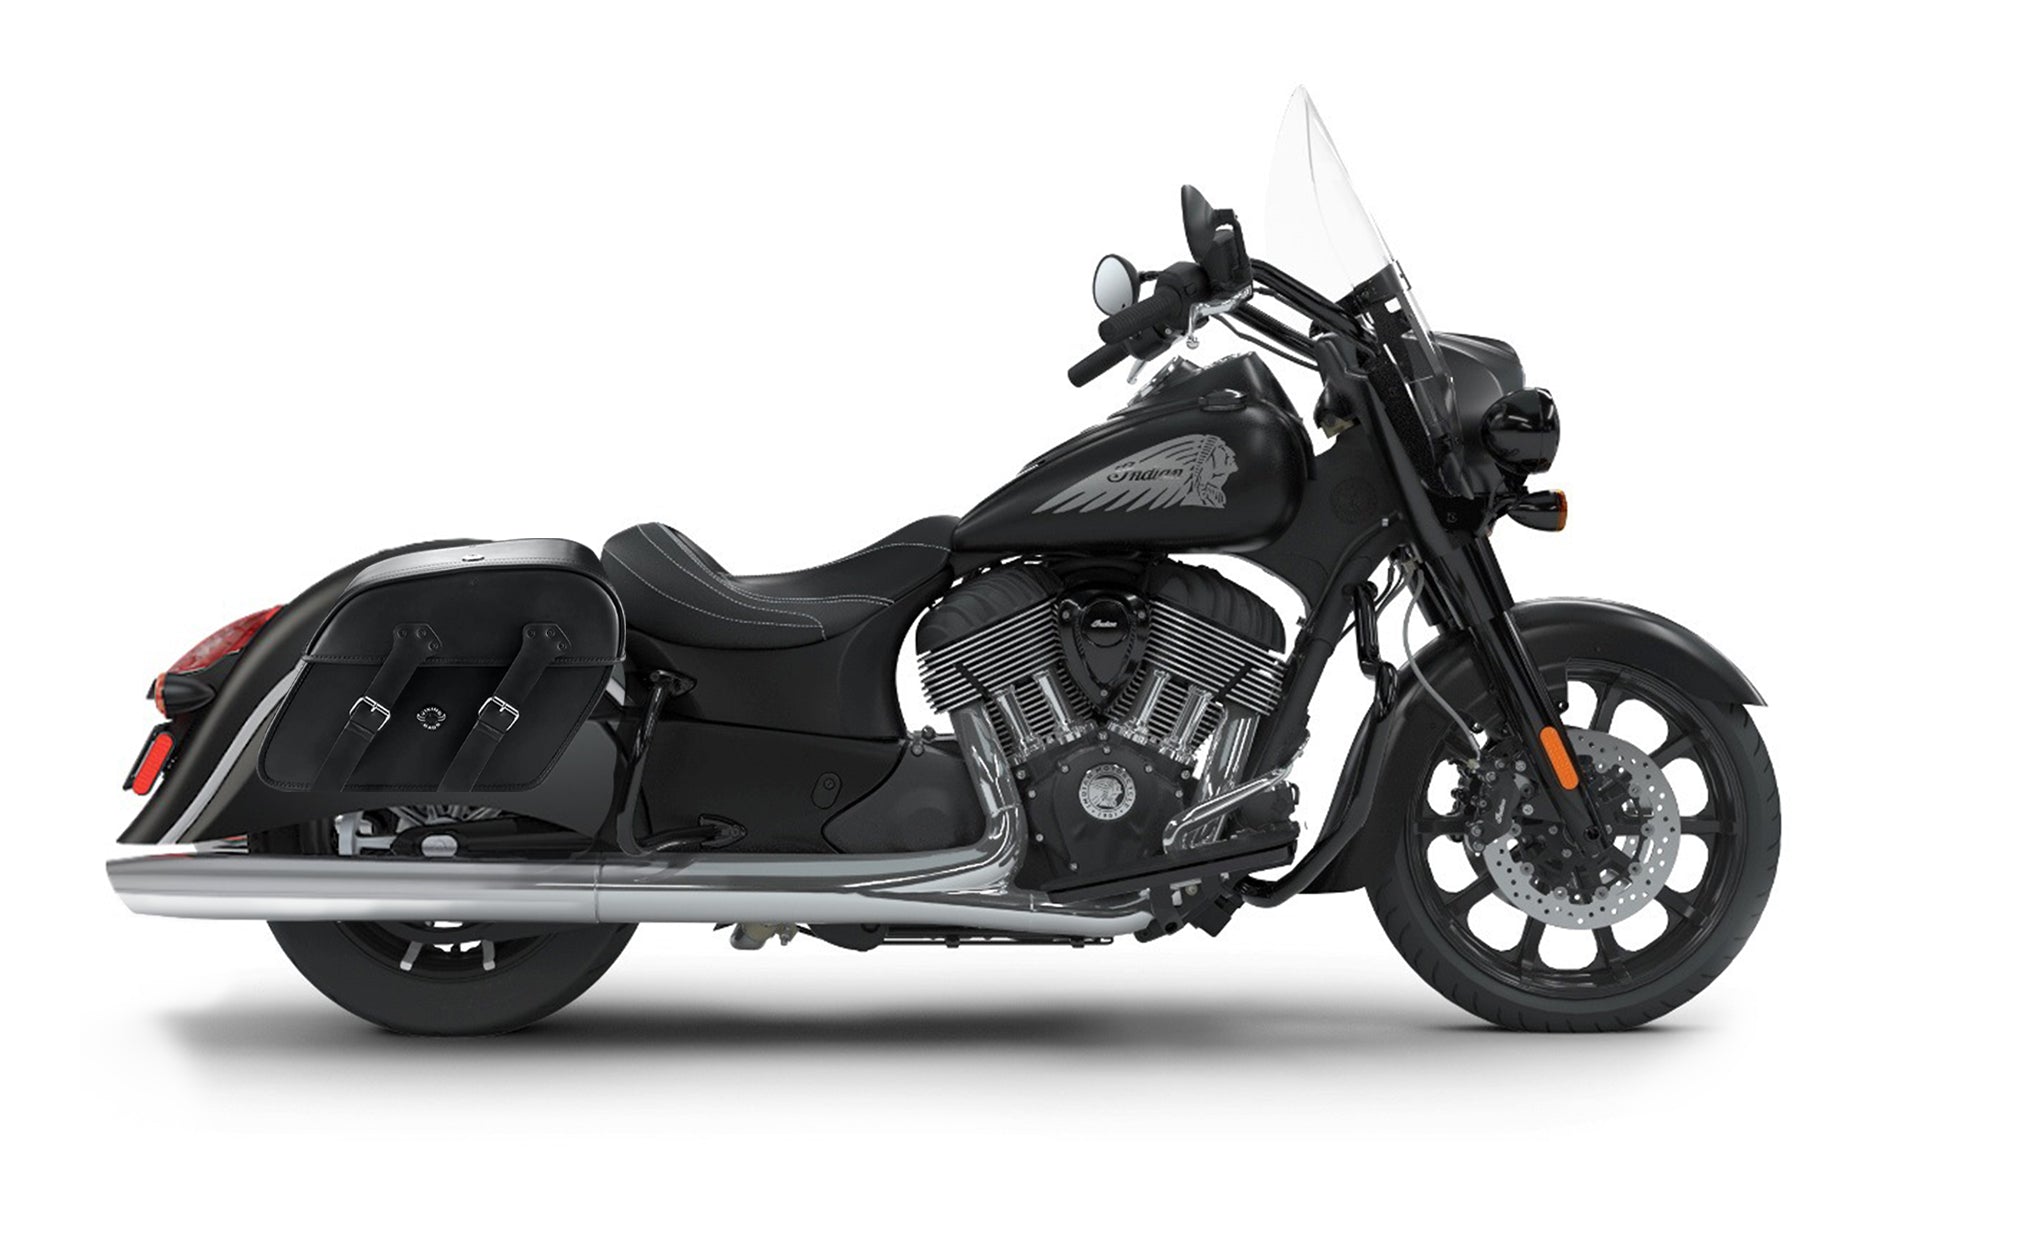 Viking Raven Large Indian Springfield Darkhorse Motorcycle Leather Saddlebags on Bike Photo @expand